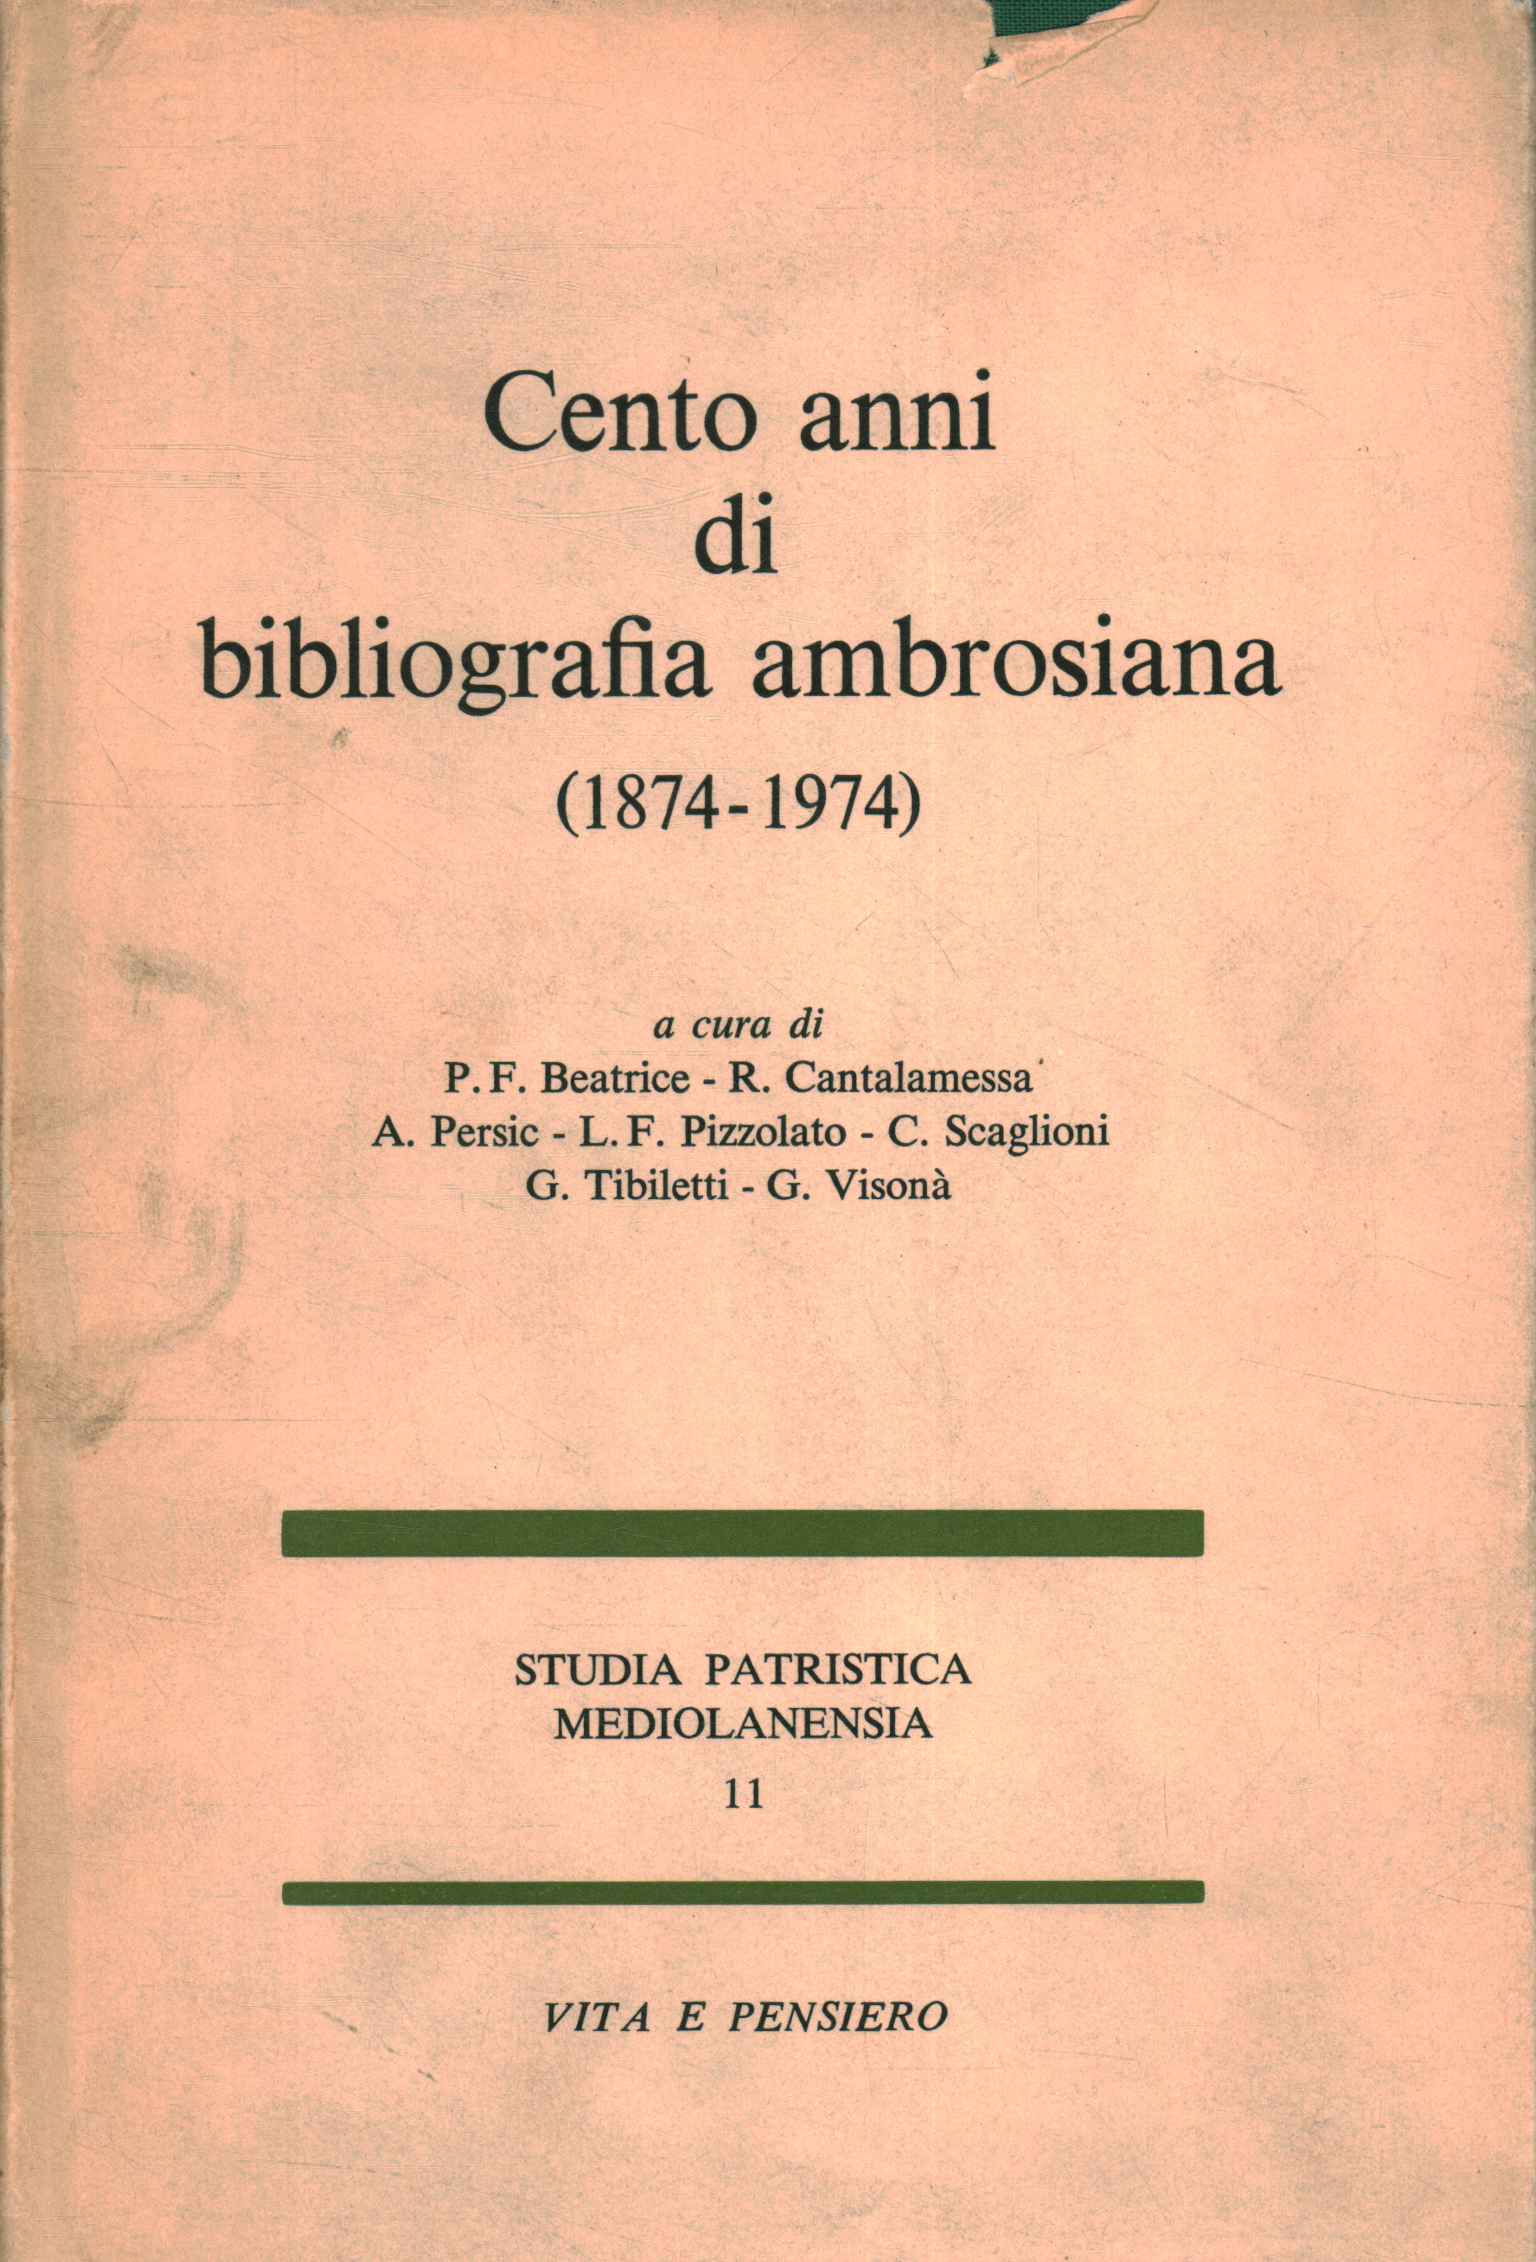 Hundert Jahre ambrosianische Bibliographie (1